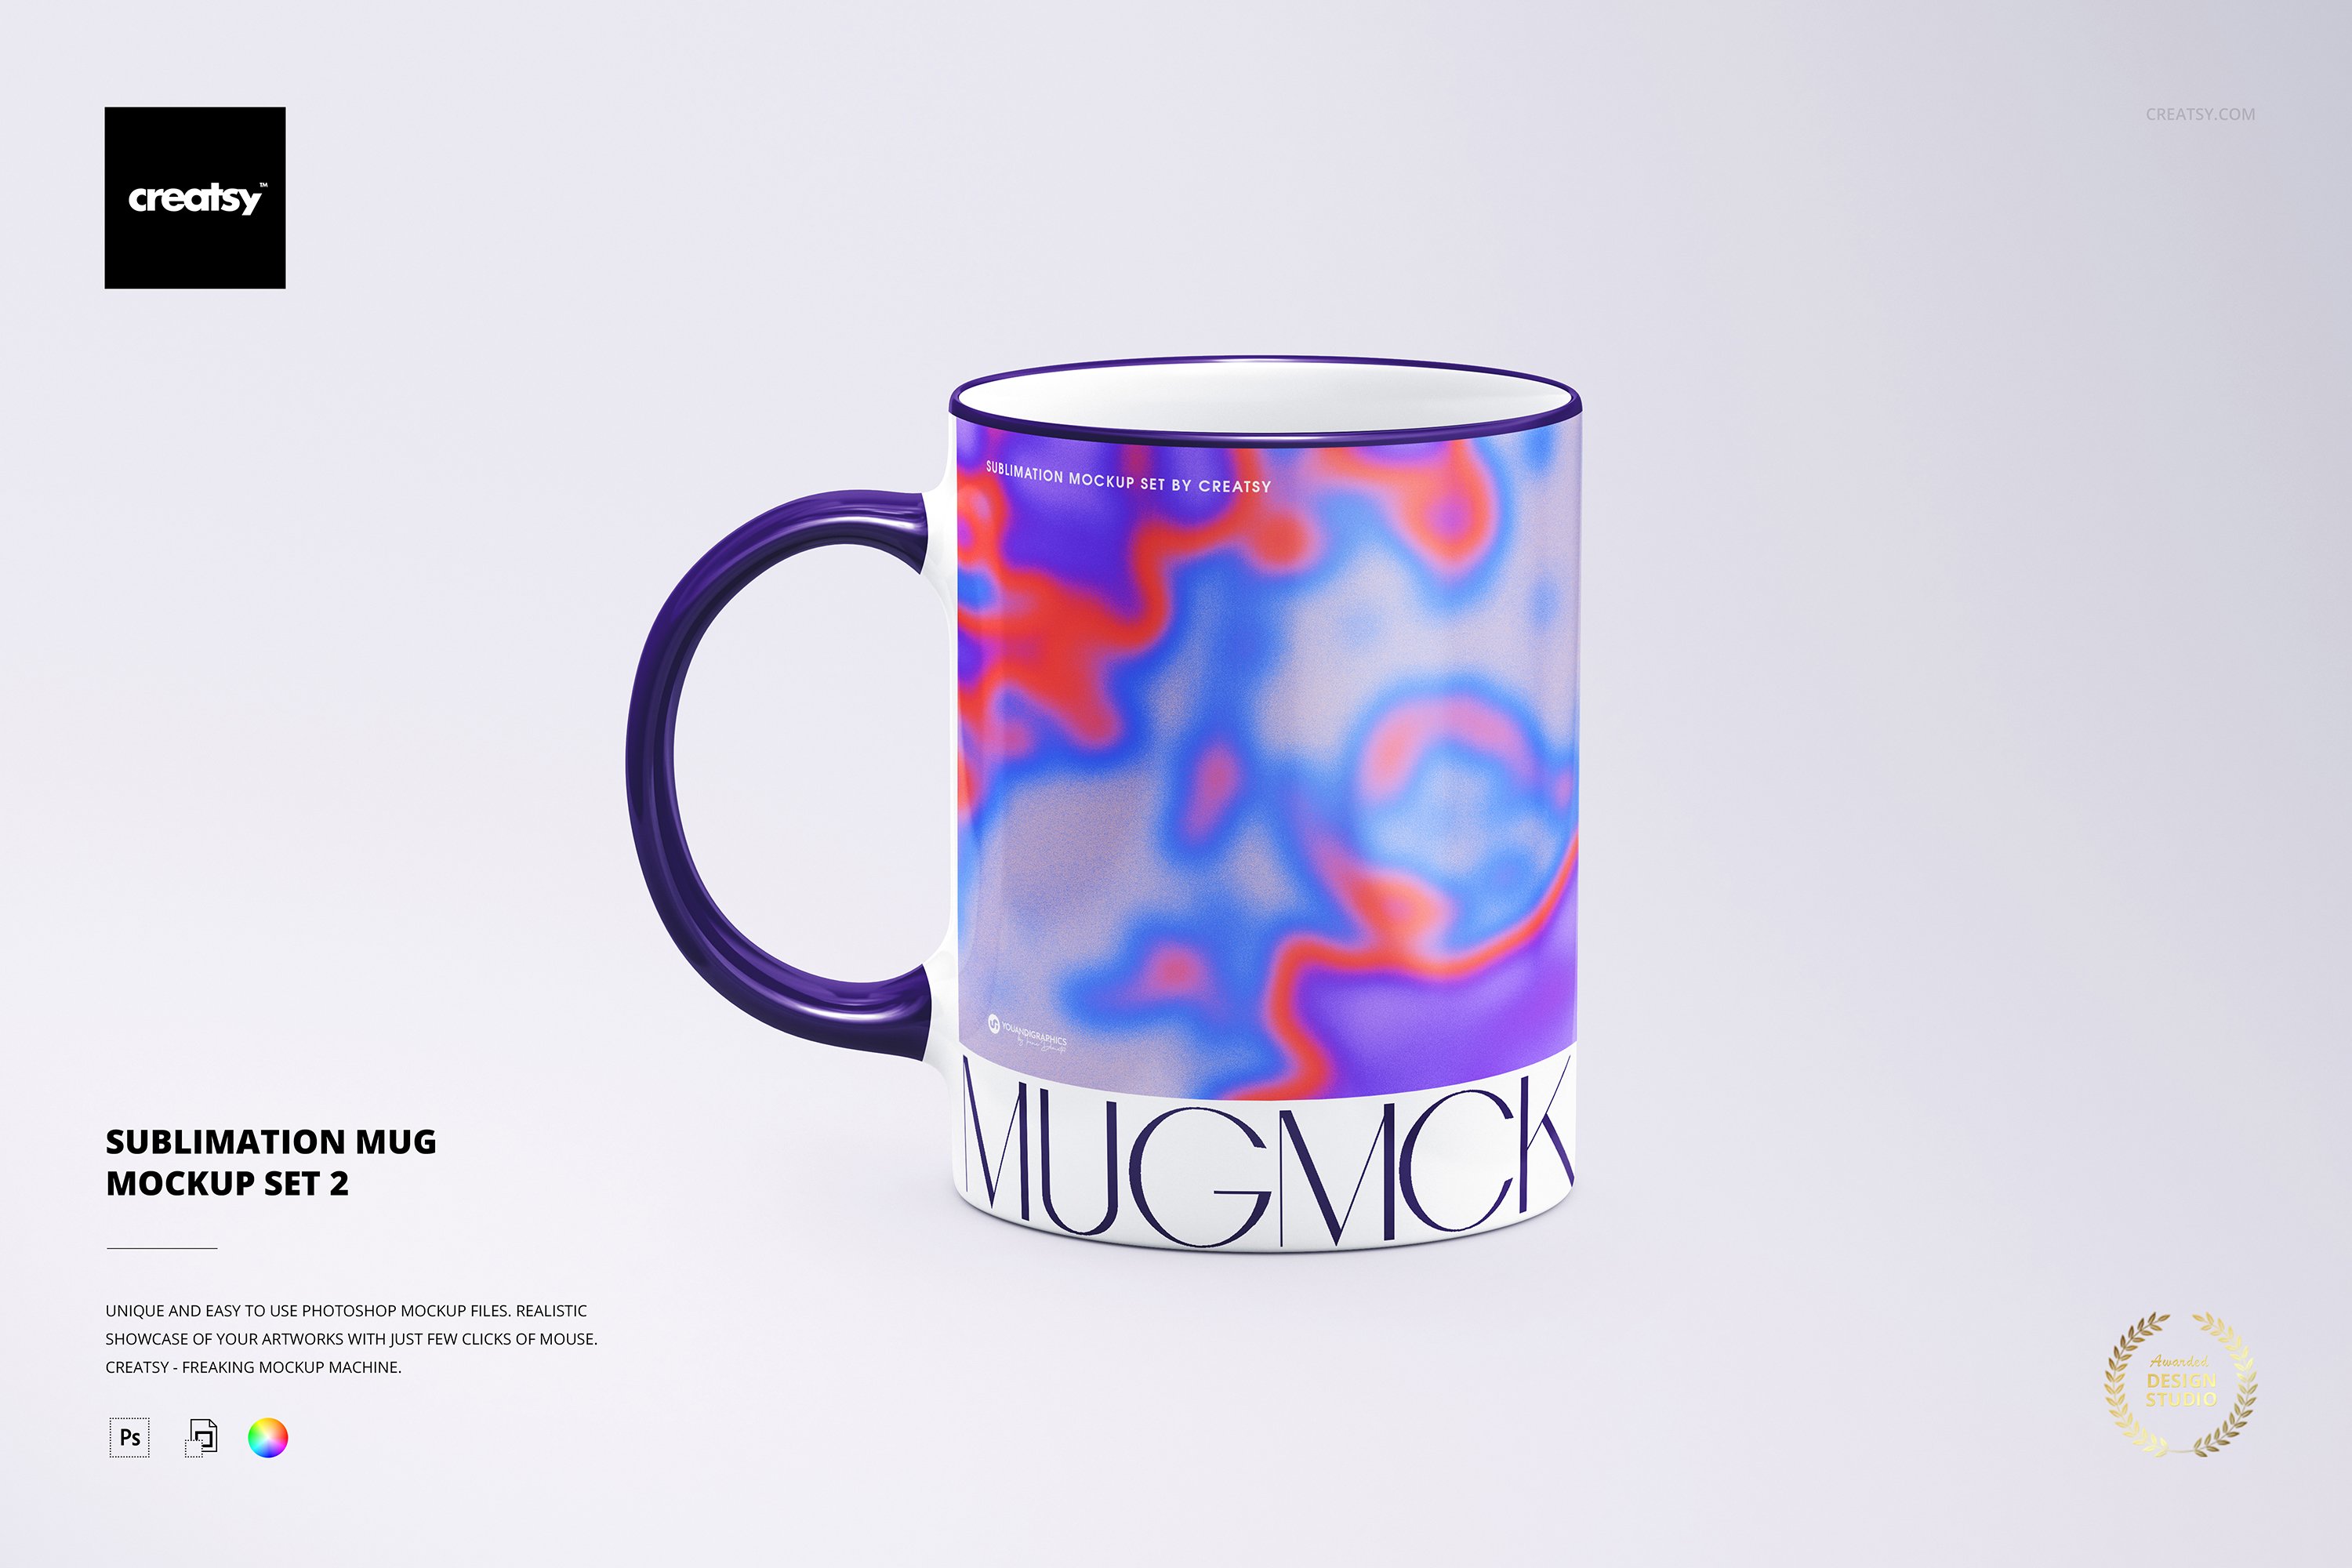 Sublimation Mug 2 Mockup Set cover image.